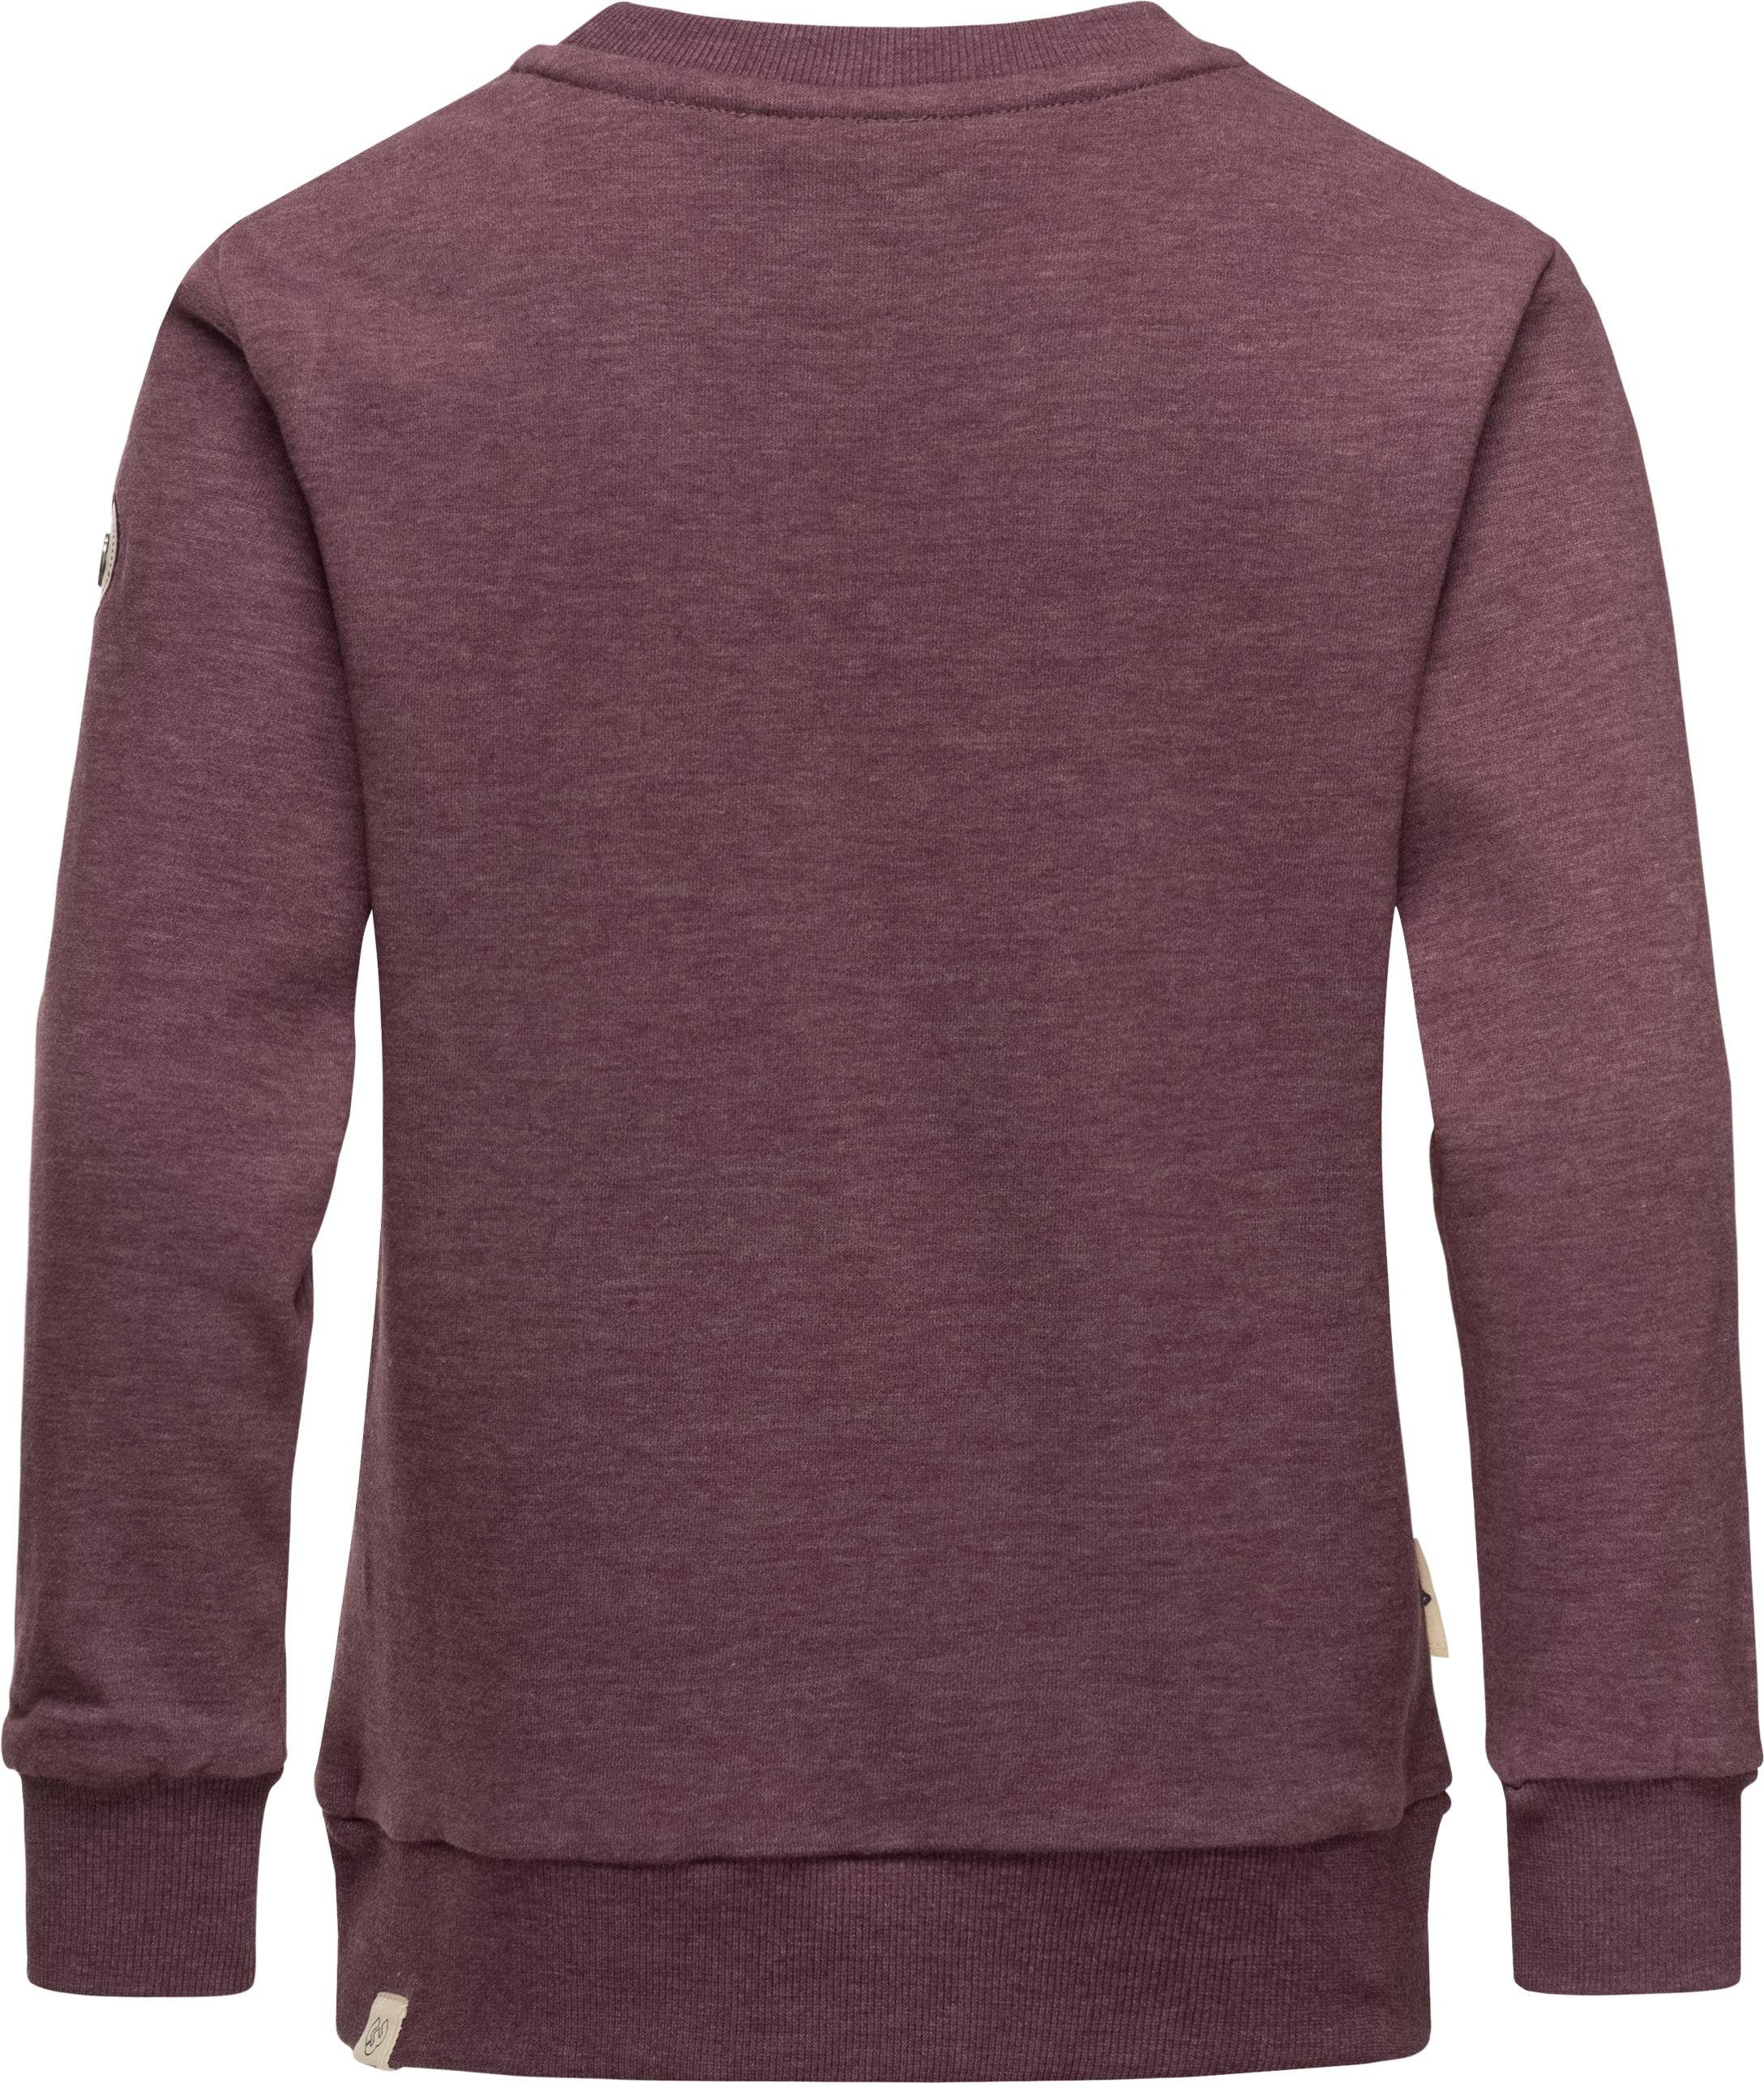 Sweater Organic Evka mit Print coolem stylisches Print Sweatshirt Mädchen pflaume Ragwear